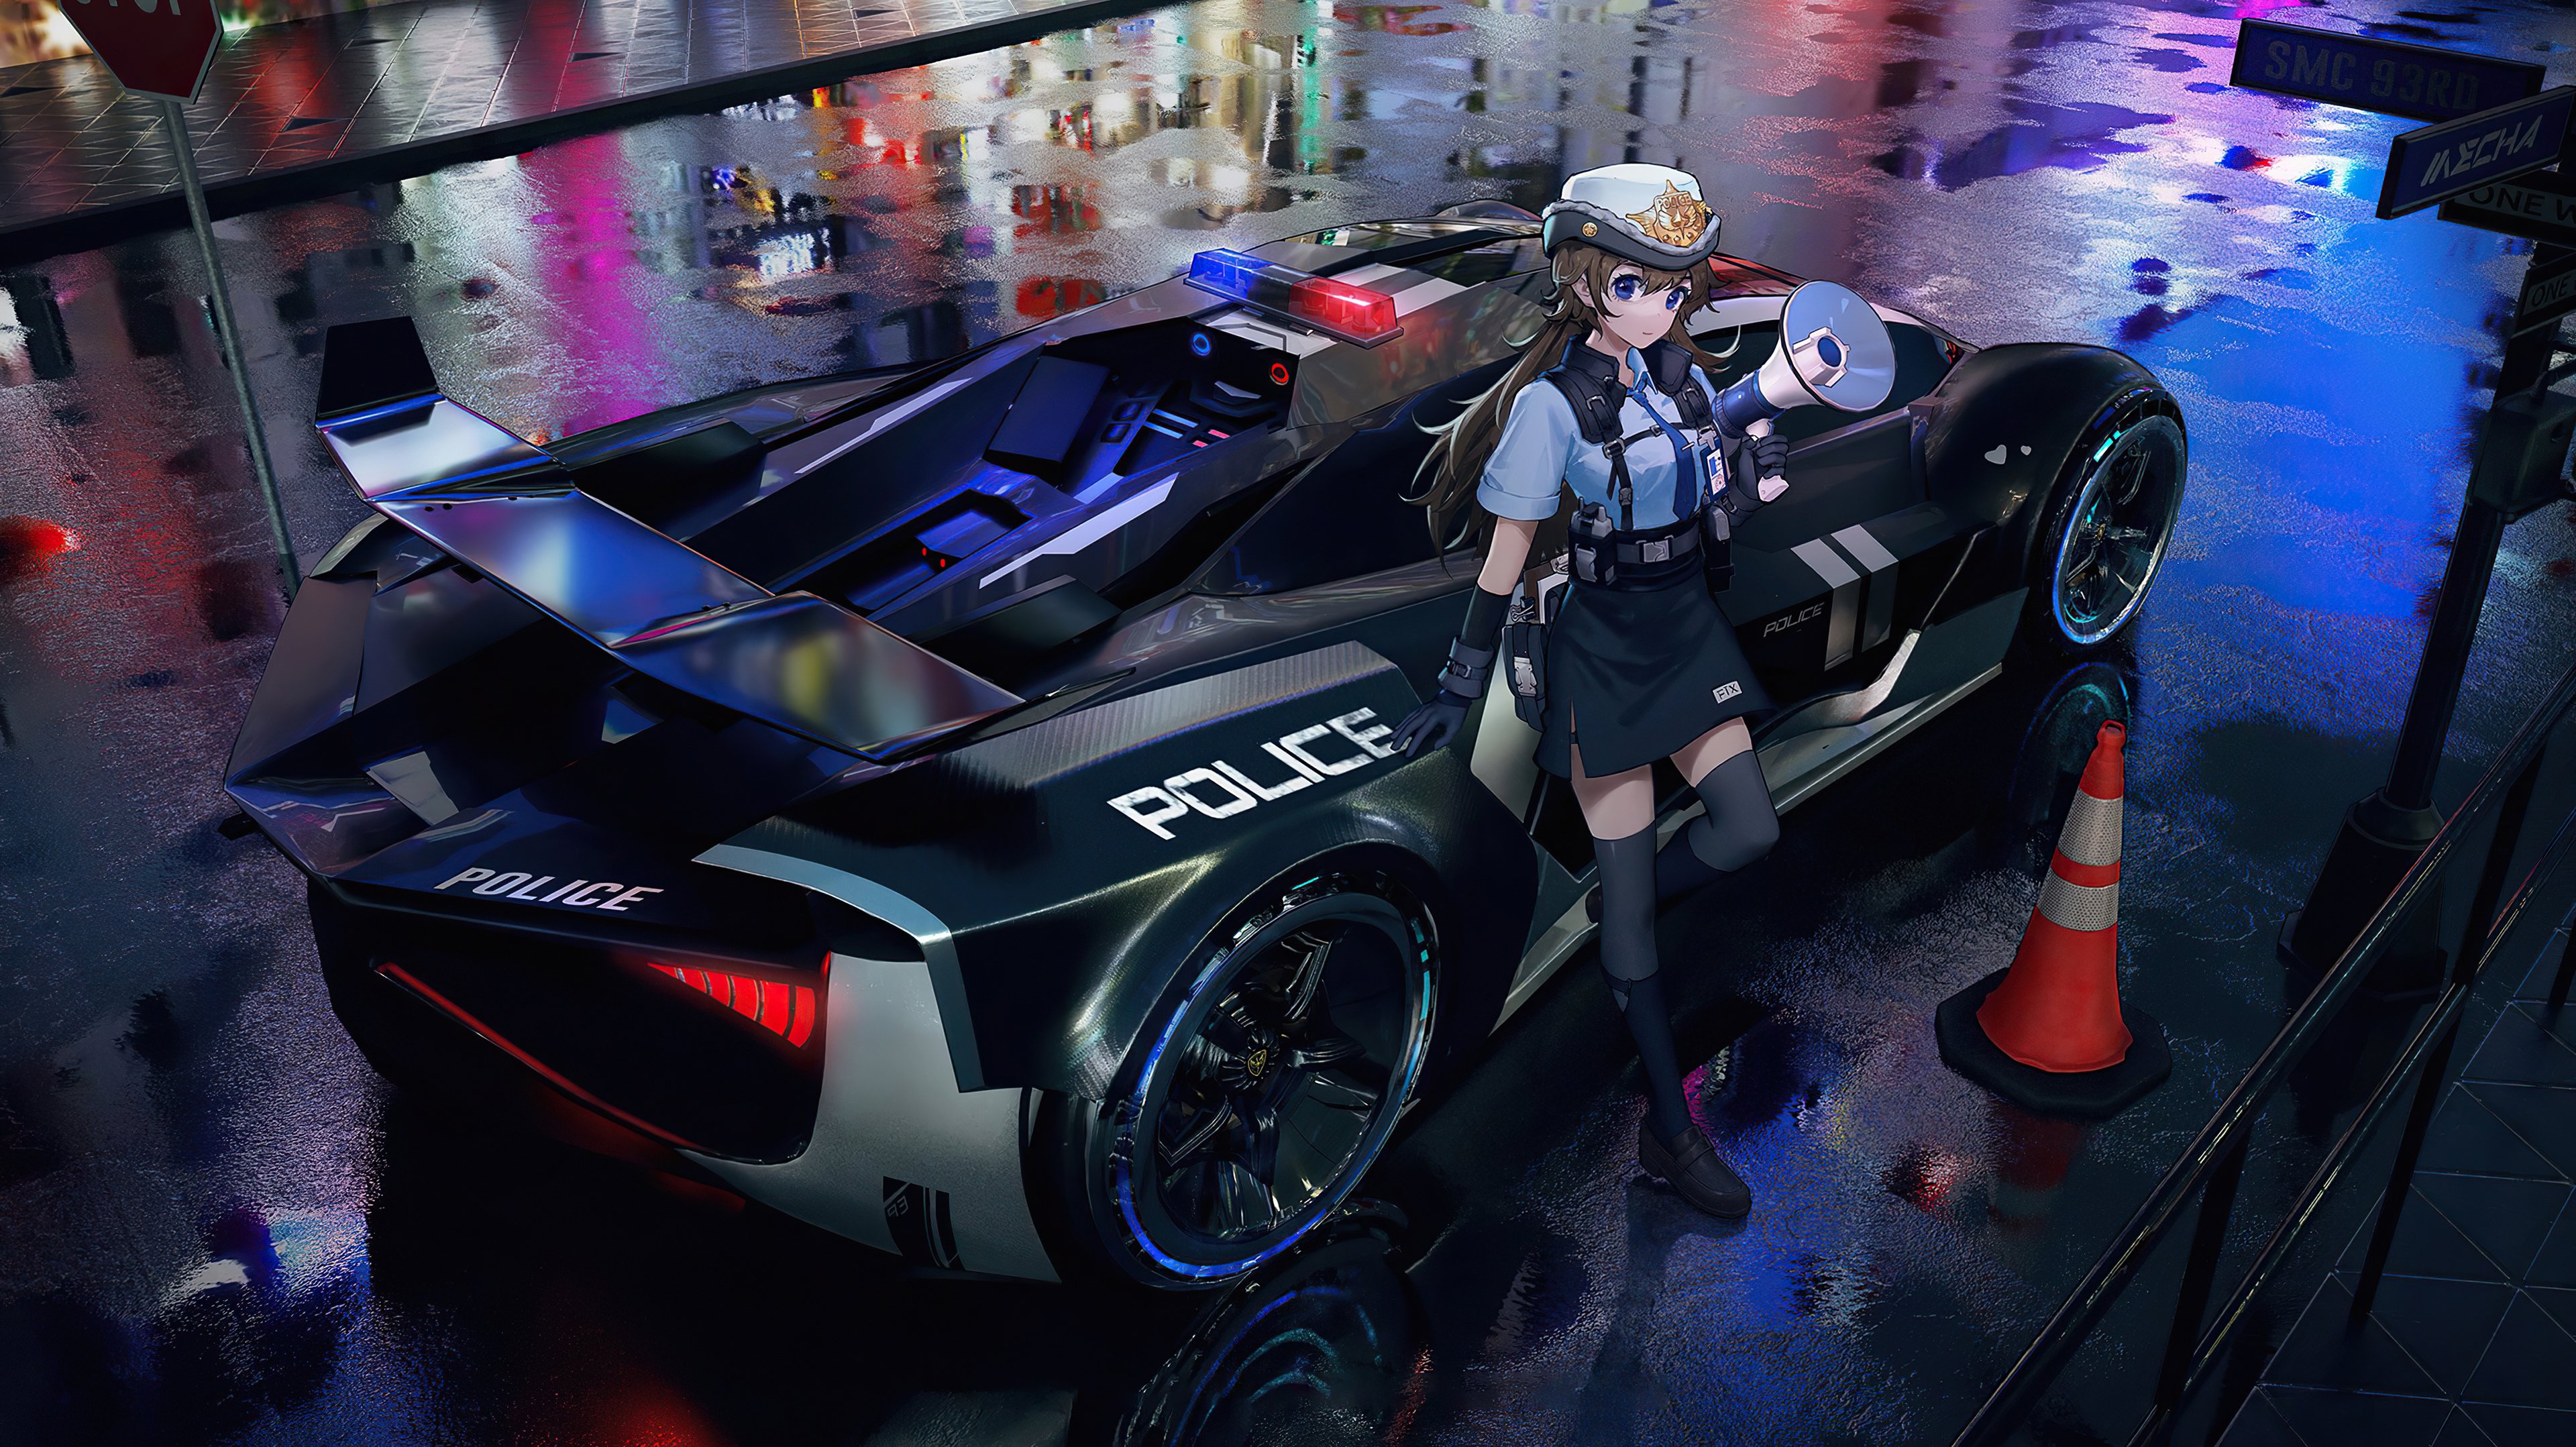 anime girl, anime, police, artist, artwork, digital art, hd, 4k HD Wallpaper